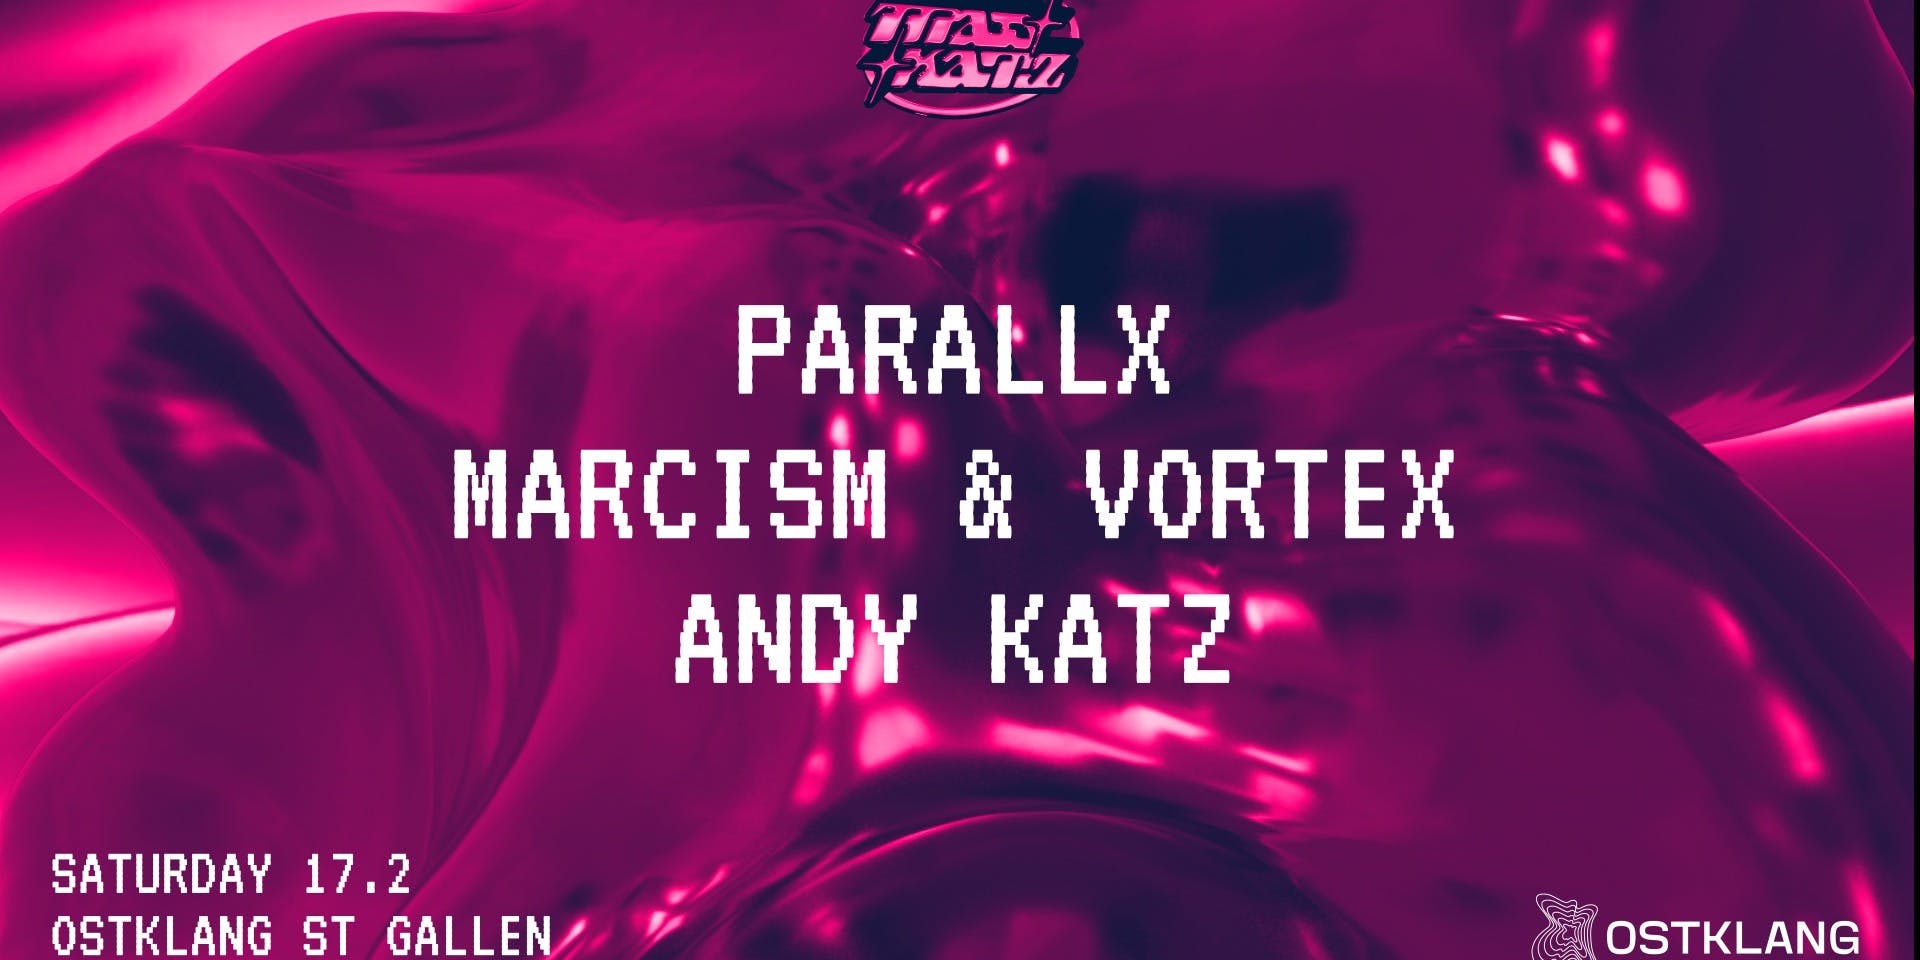 Titelbild MAD KATZ x OSTKLANG mit PARALLX, MARCISM & VORTEX, ANDY KATZ